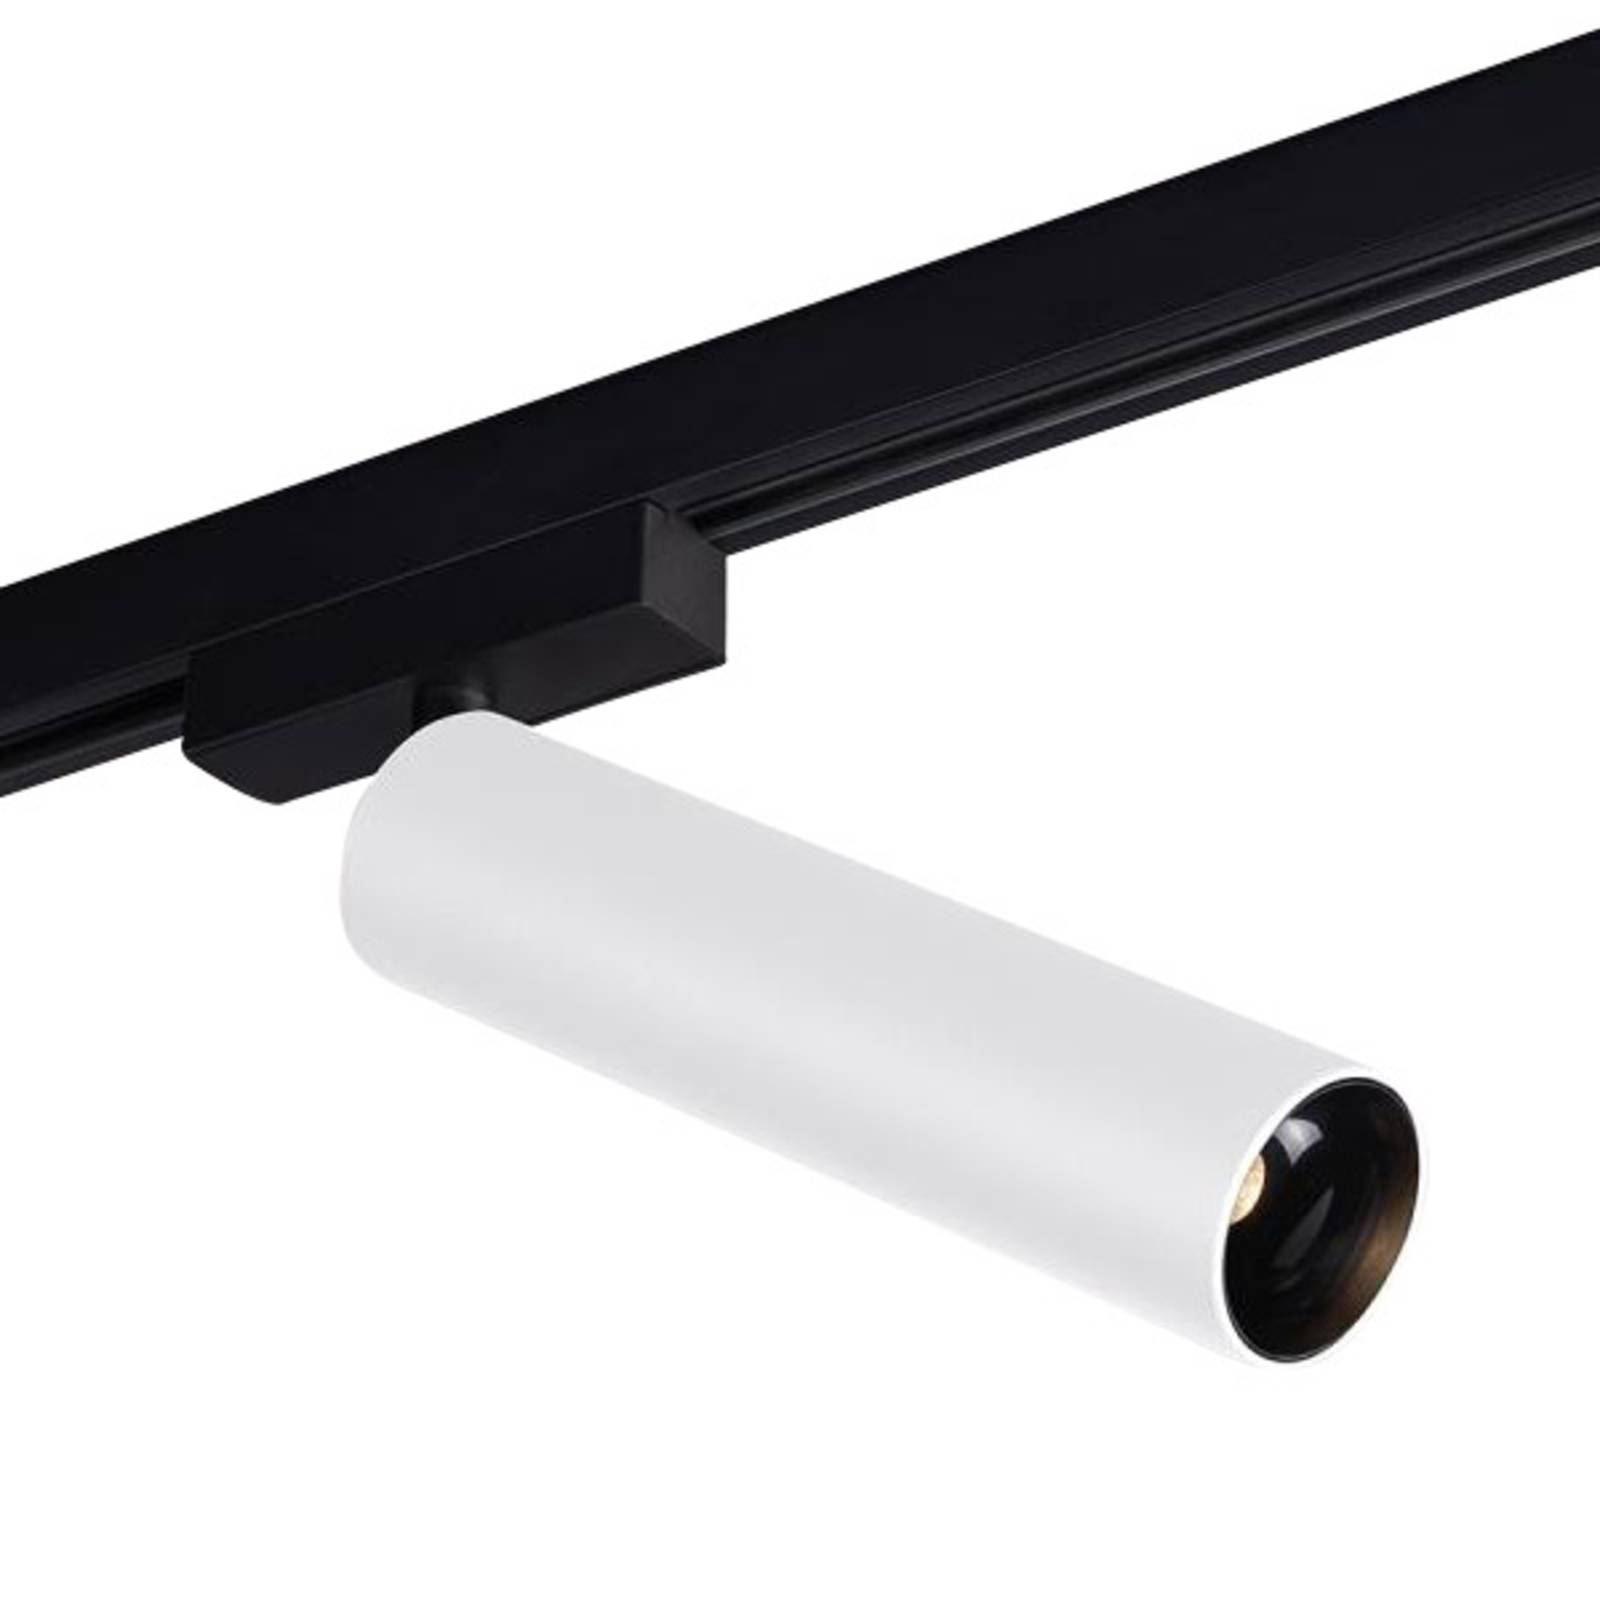 LED-Schienenspot Trigga Volare 930 55° weiß/black von Molto Luce